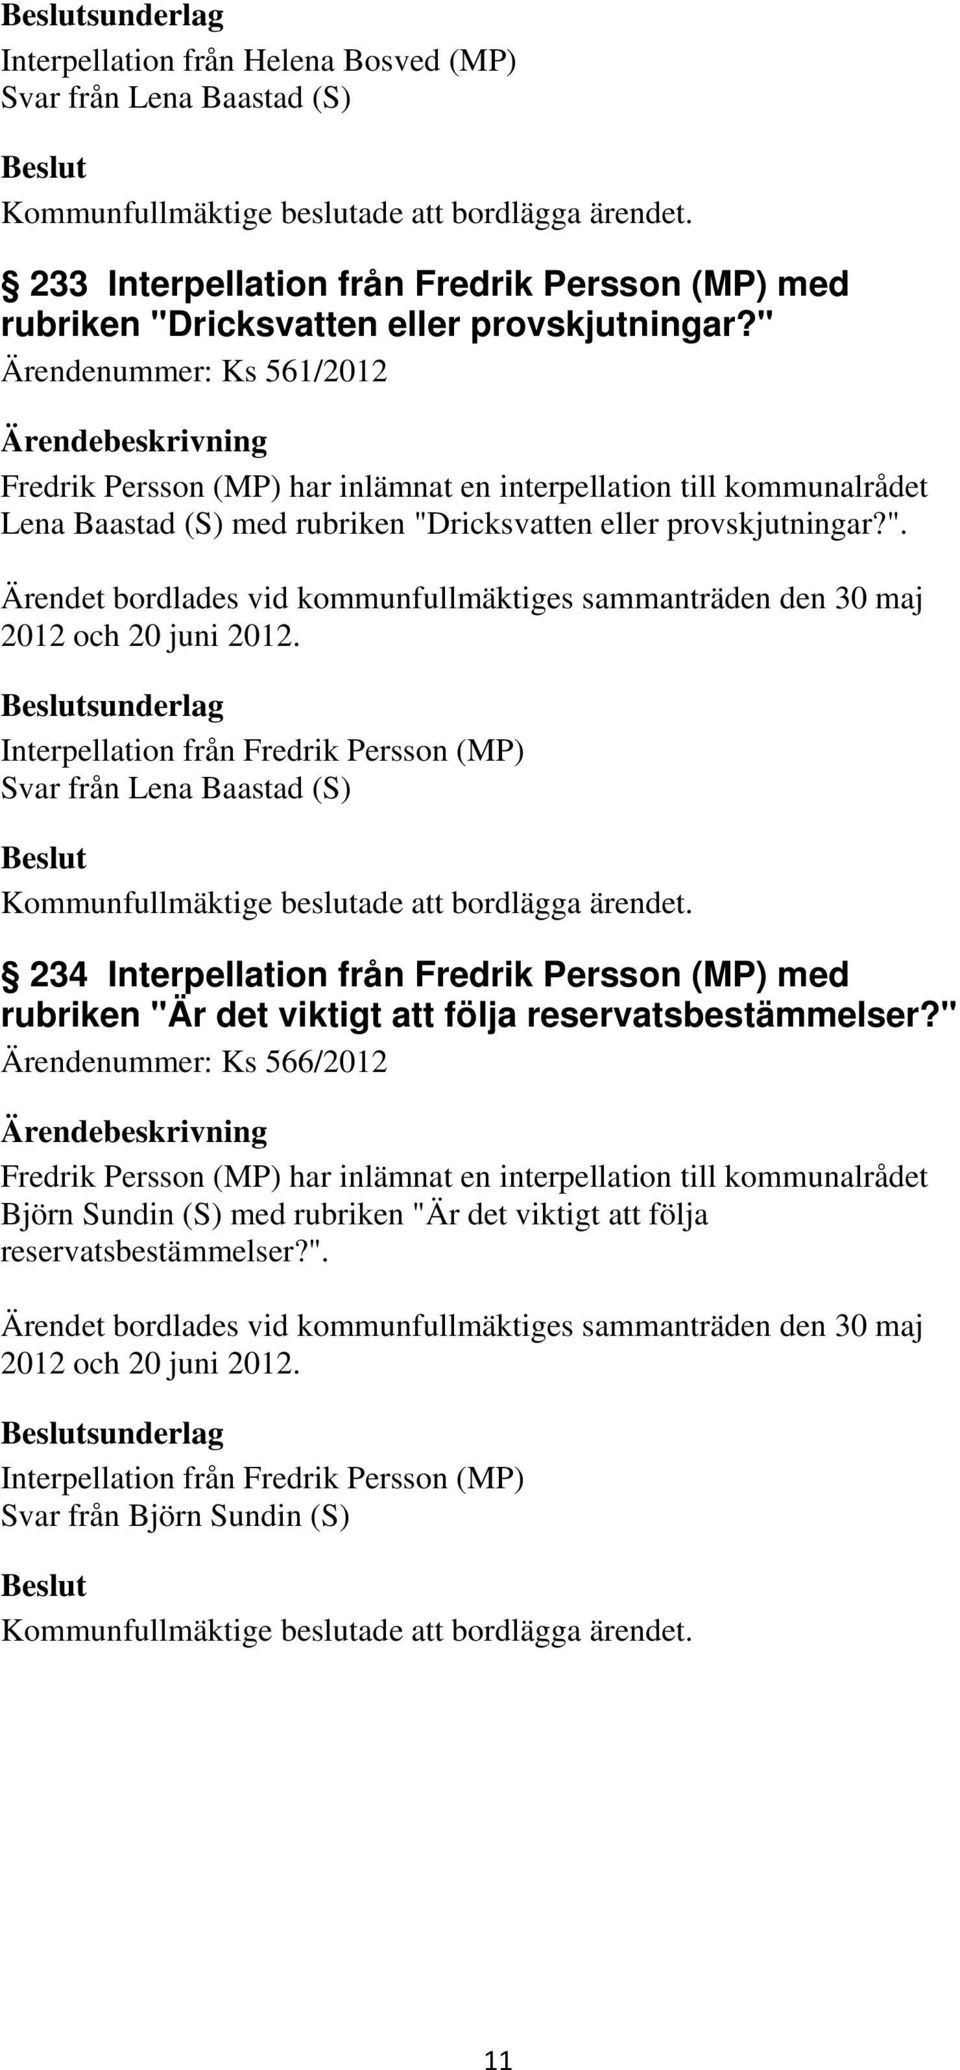 sunderlag Interpellation från Fredrik Persson (MP) Svar från Lena Baastad (S) 234 Interpellation från Fredrik Persson (MP) med rubriken "Är det viktigt att följa reservatsbestämmelser?